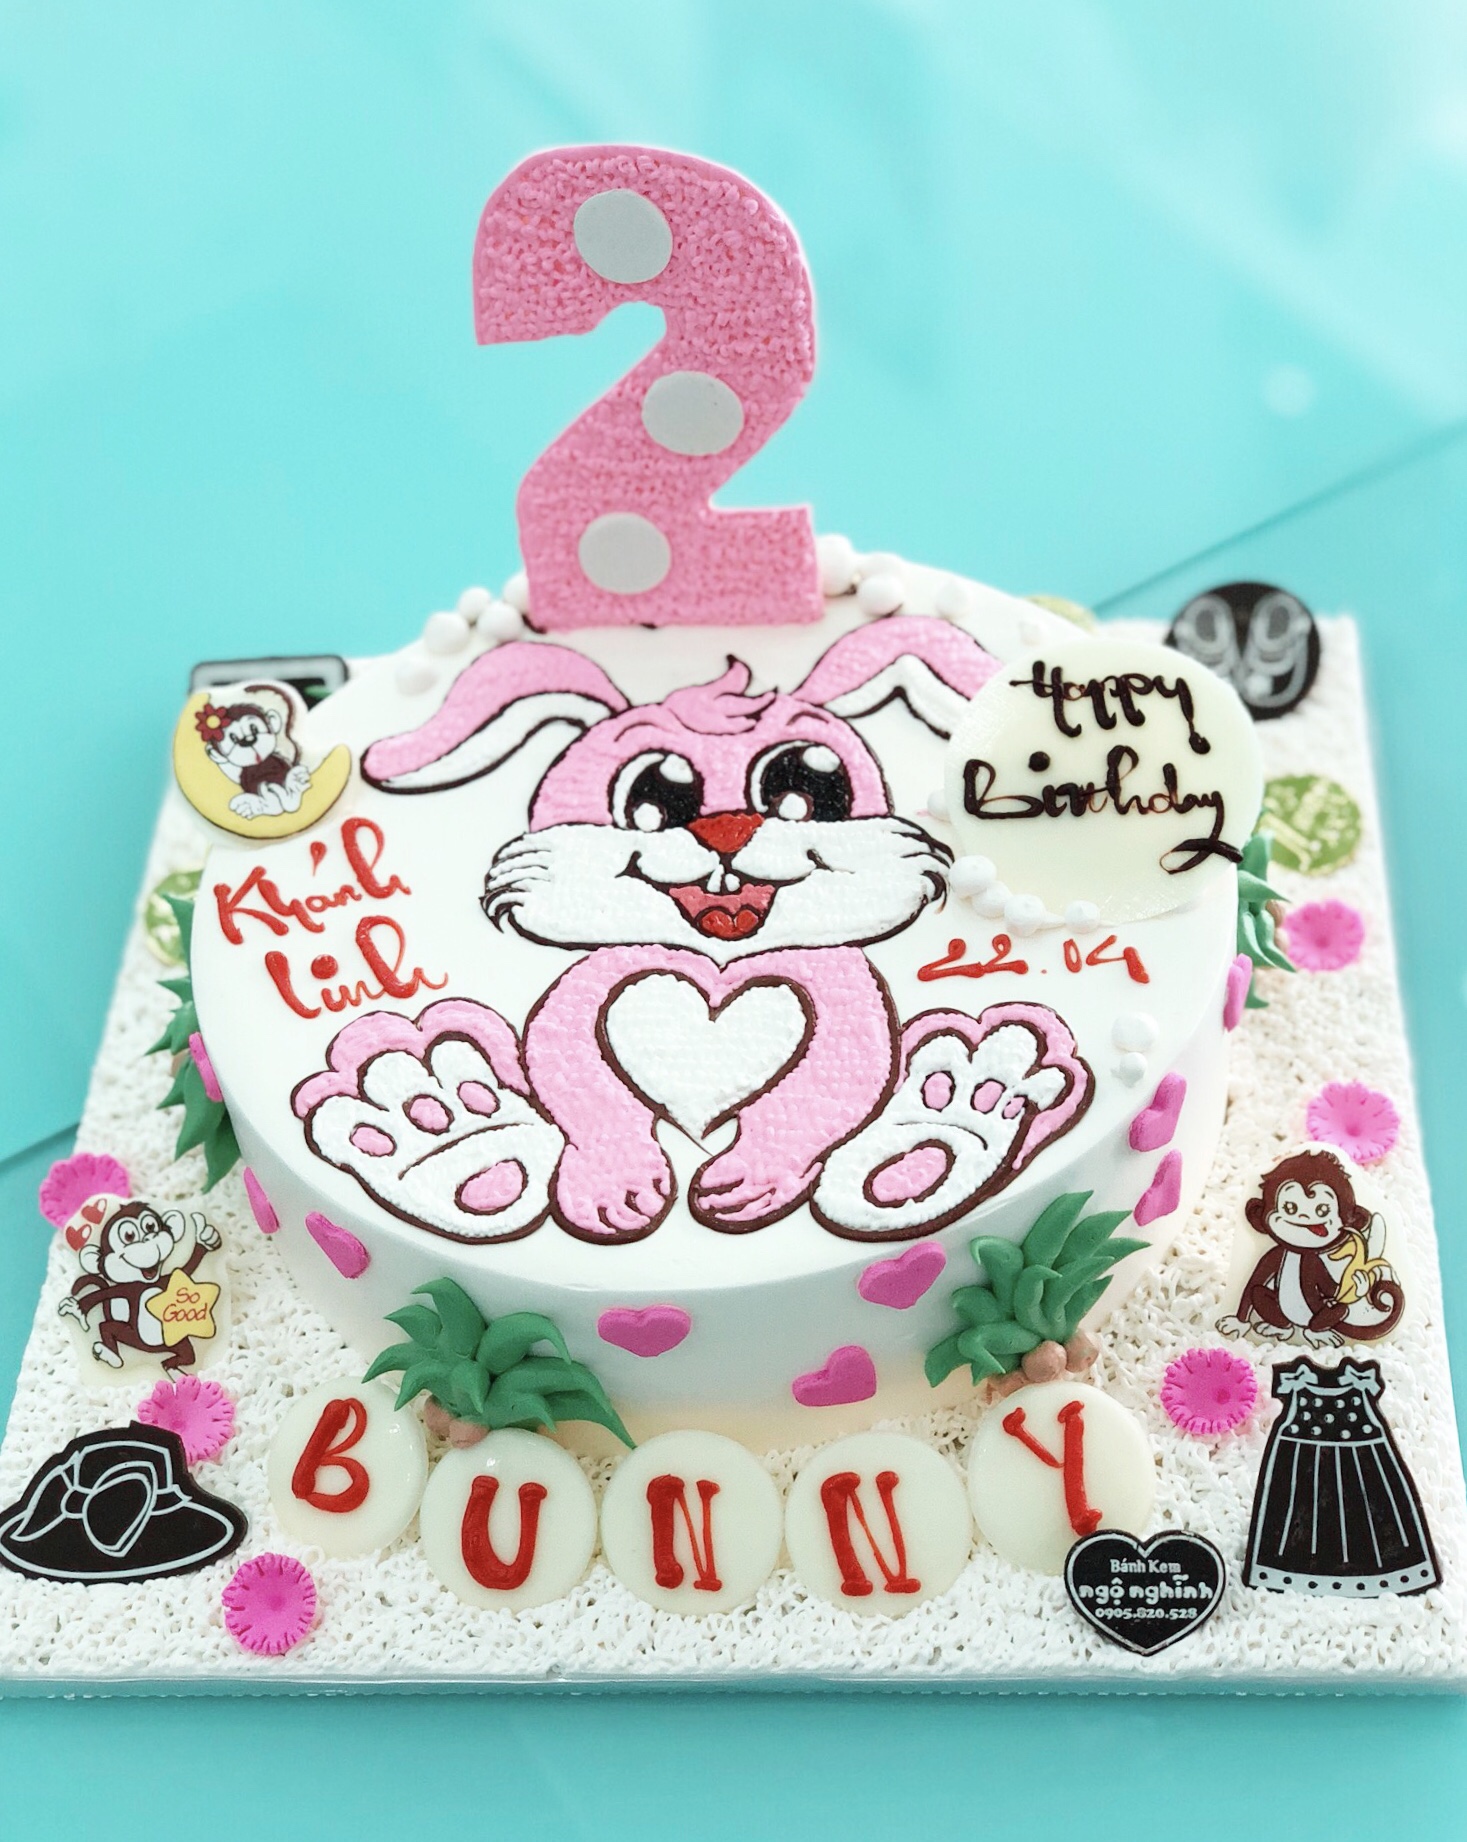 Bánh sinh nhật chú thỏ: Hình ảnh bánh sinh nhật chú thỏ đang xuất hiện trước mắt bạn sẽ khiến bạn không thể kìm chế được sự thèm muốn. Dùng bộ não sáng tạo của bạn để tự tay thực hiện món bánh thật độc đáo cho ngày sinh nhật tiếp theo.